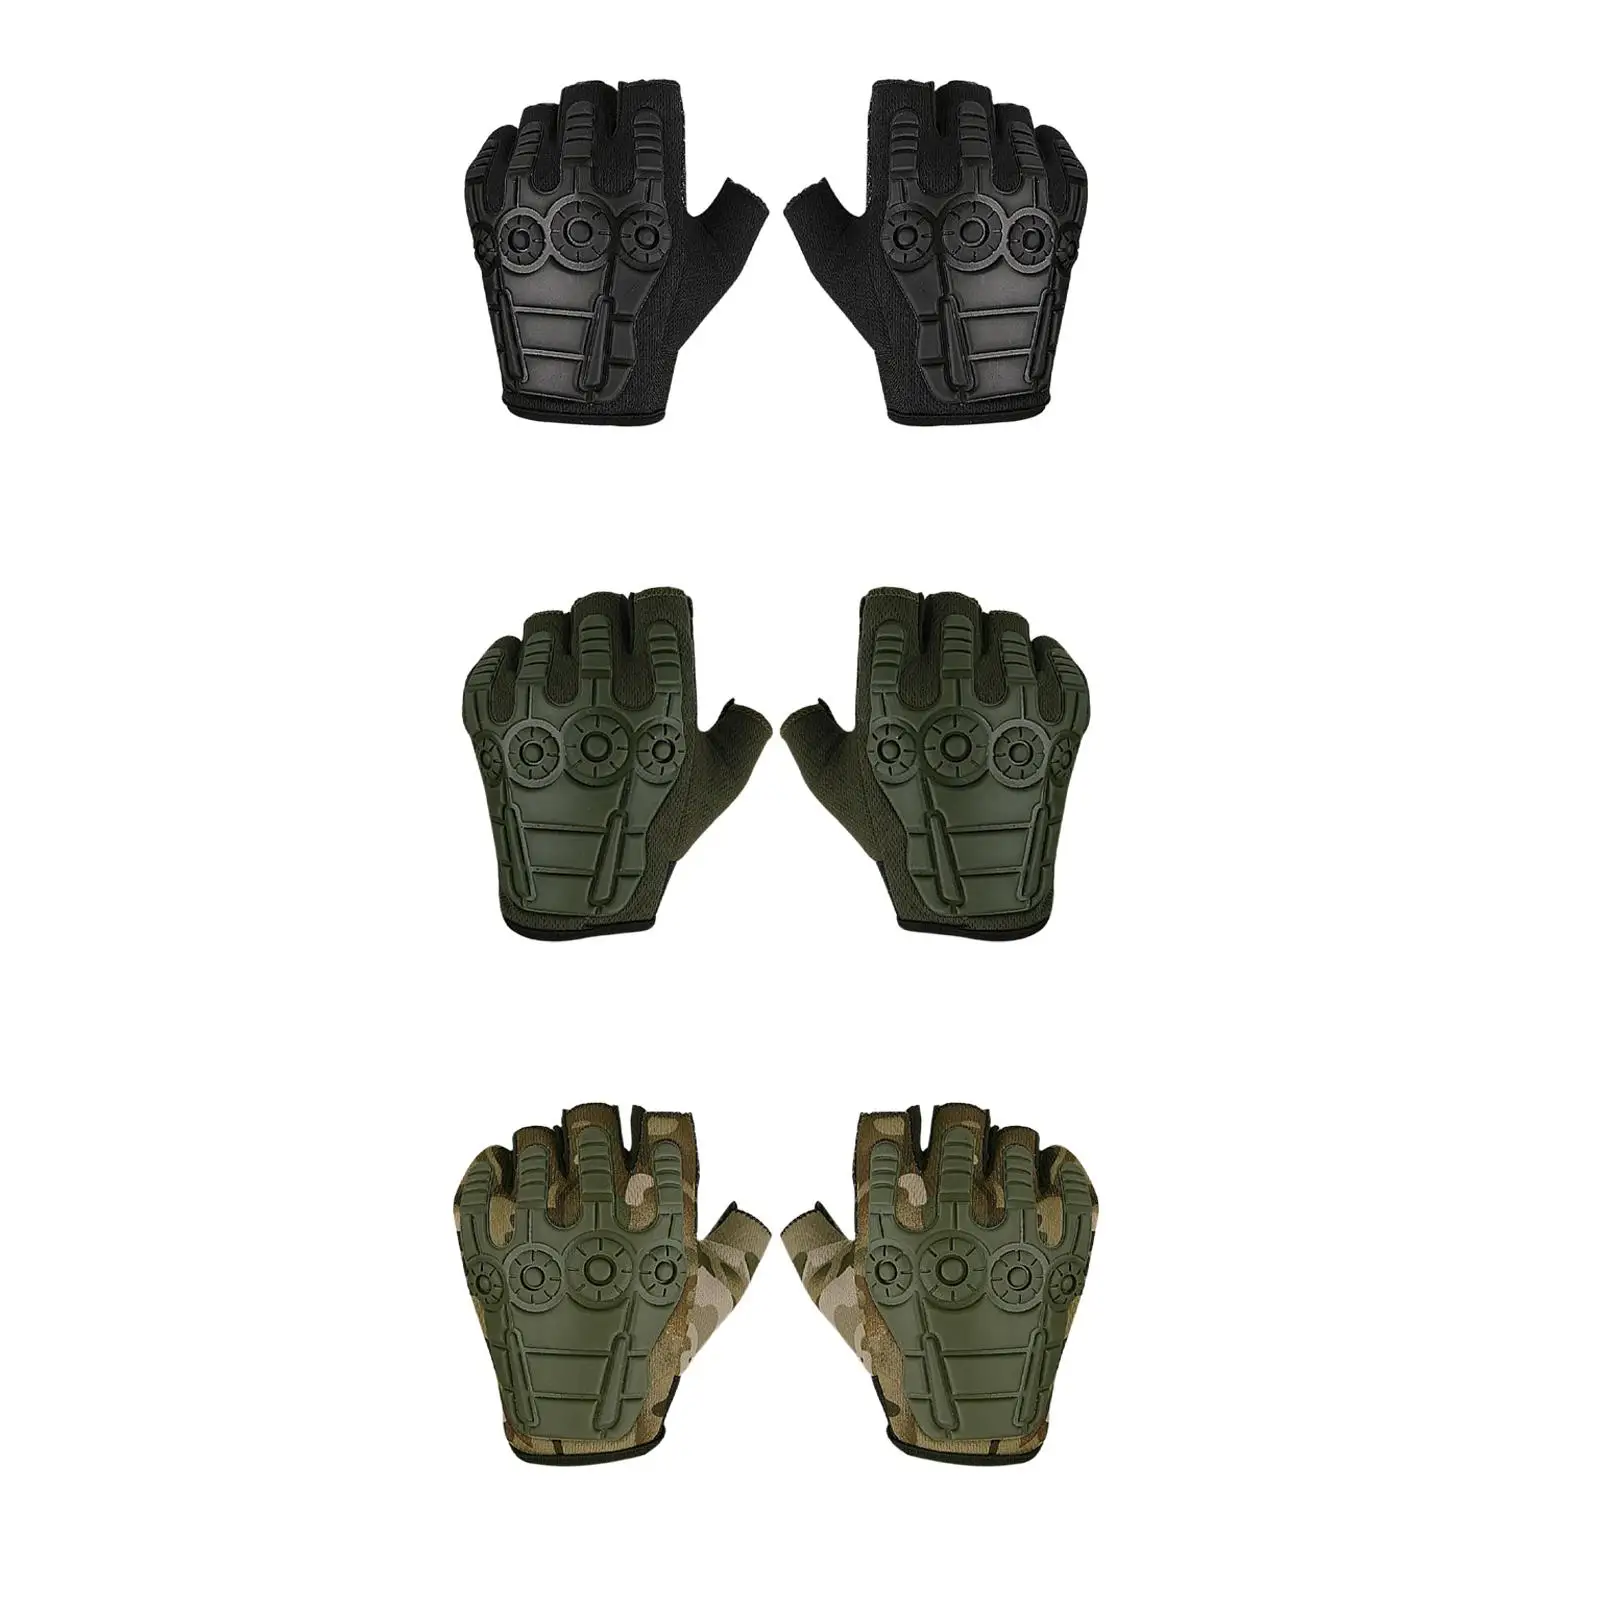 Half Finger Gloves Comfortable Fingerless Gloves Fitness Training Gloves for Women Men Adults Unisex Hiking Training Driving